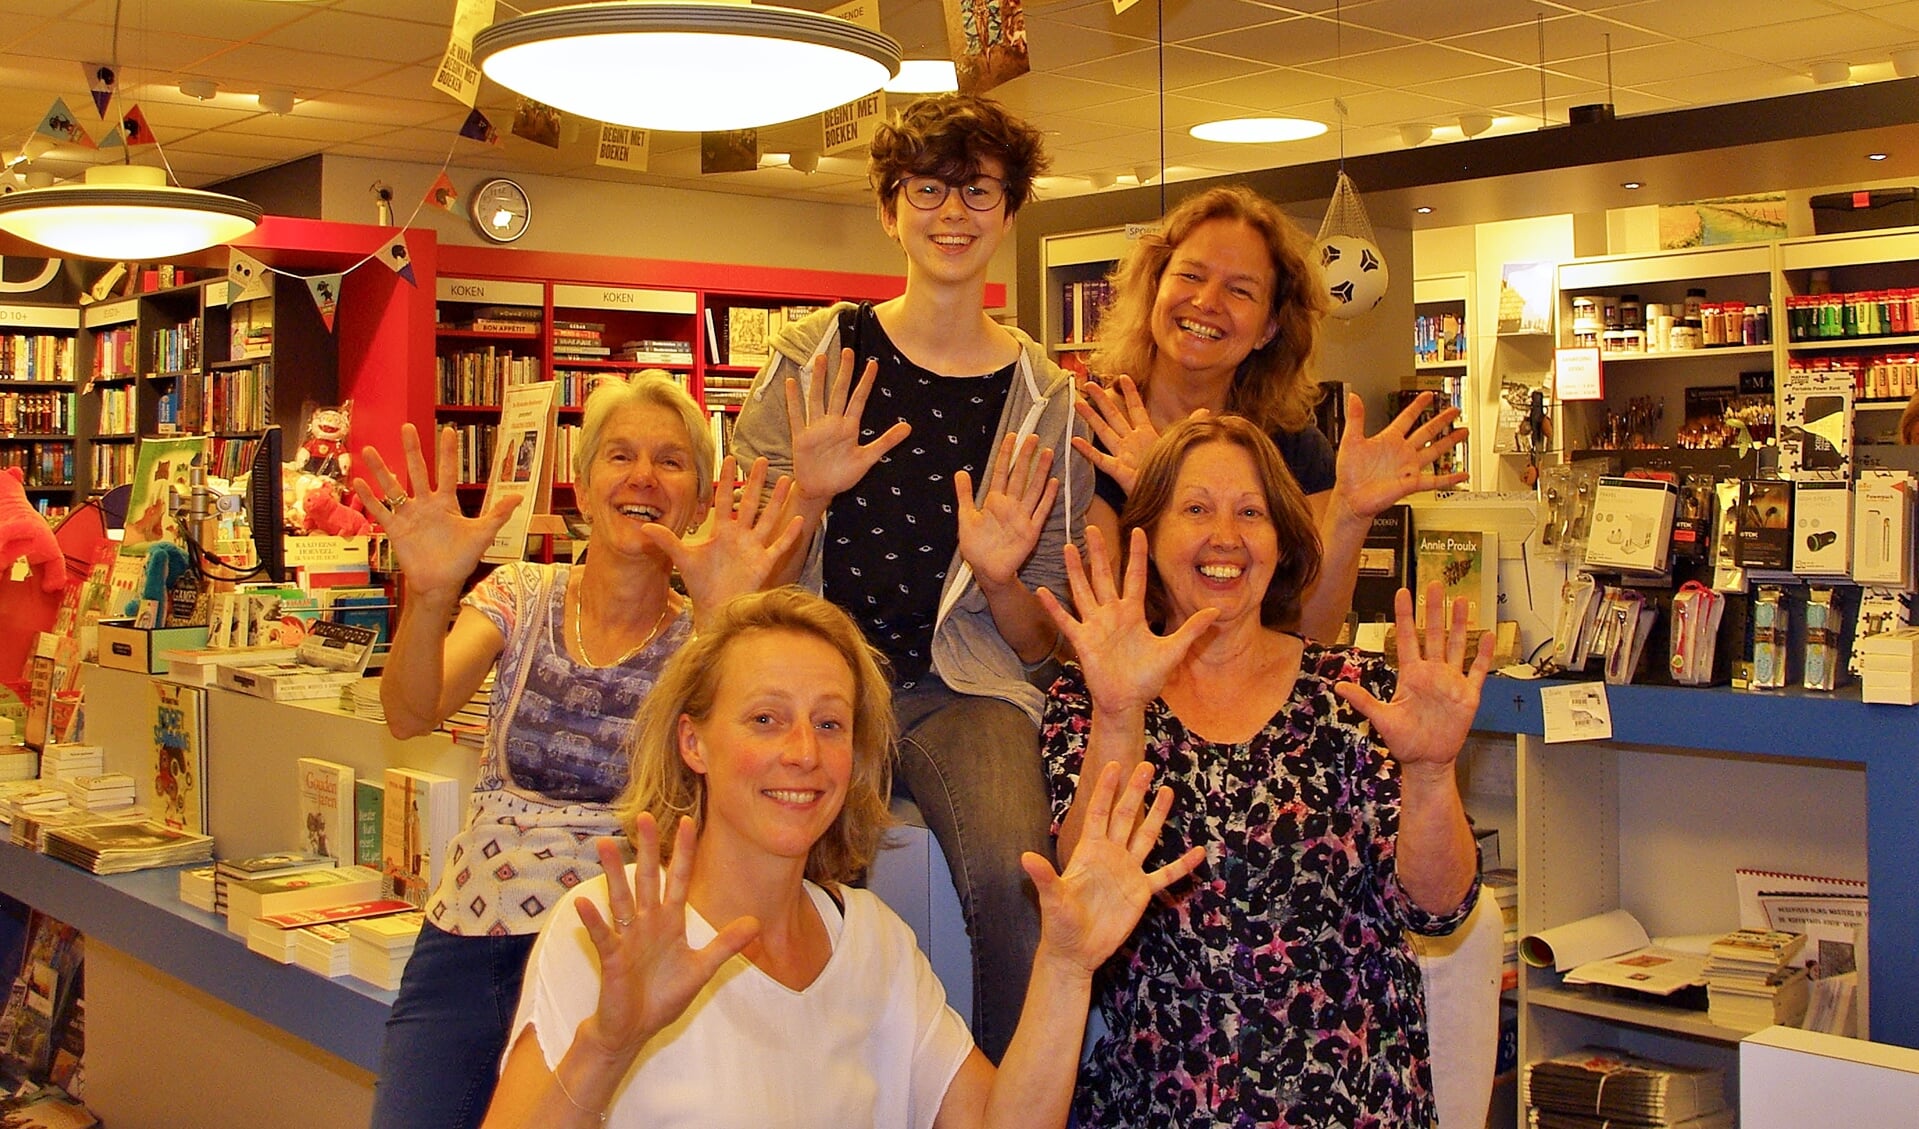 Het enthousiaste boekhandel-team laat zien dat De Rijnlandse deze week feest viert vanwege 'tien jaar Koek'. | Foto's Willemien Timmers